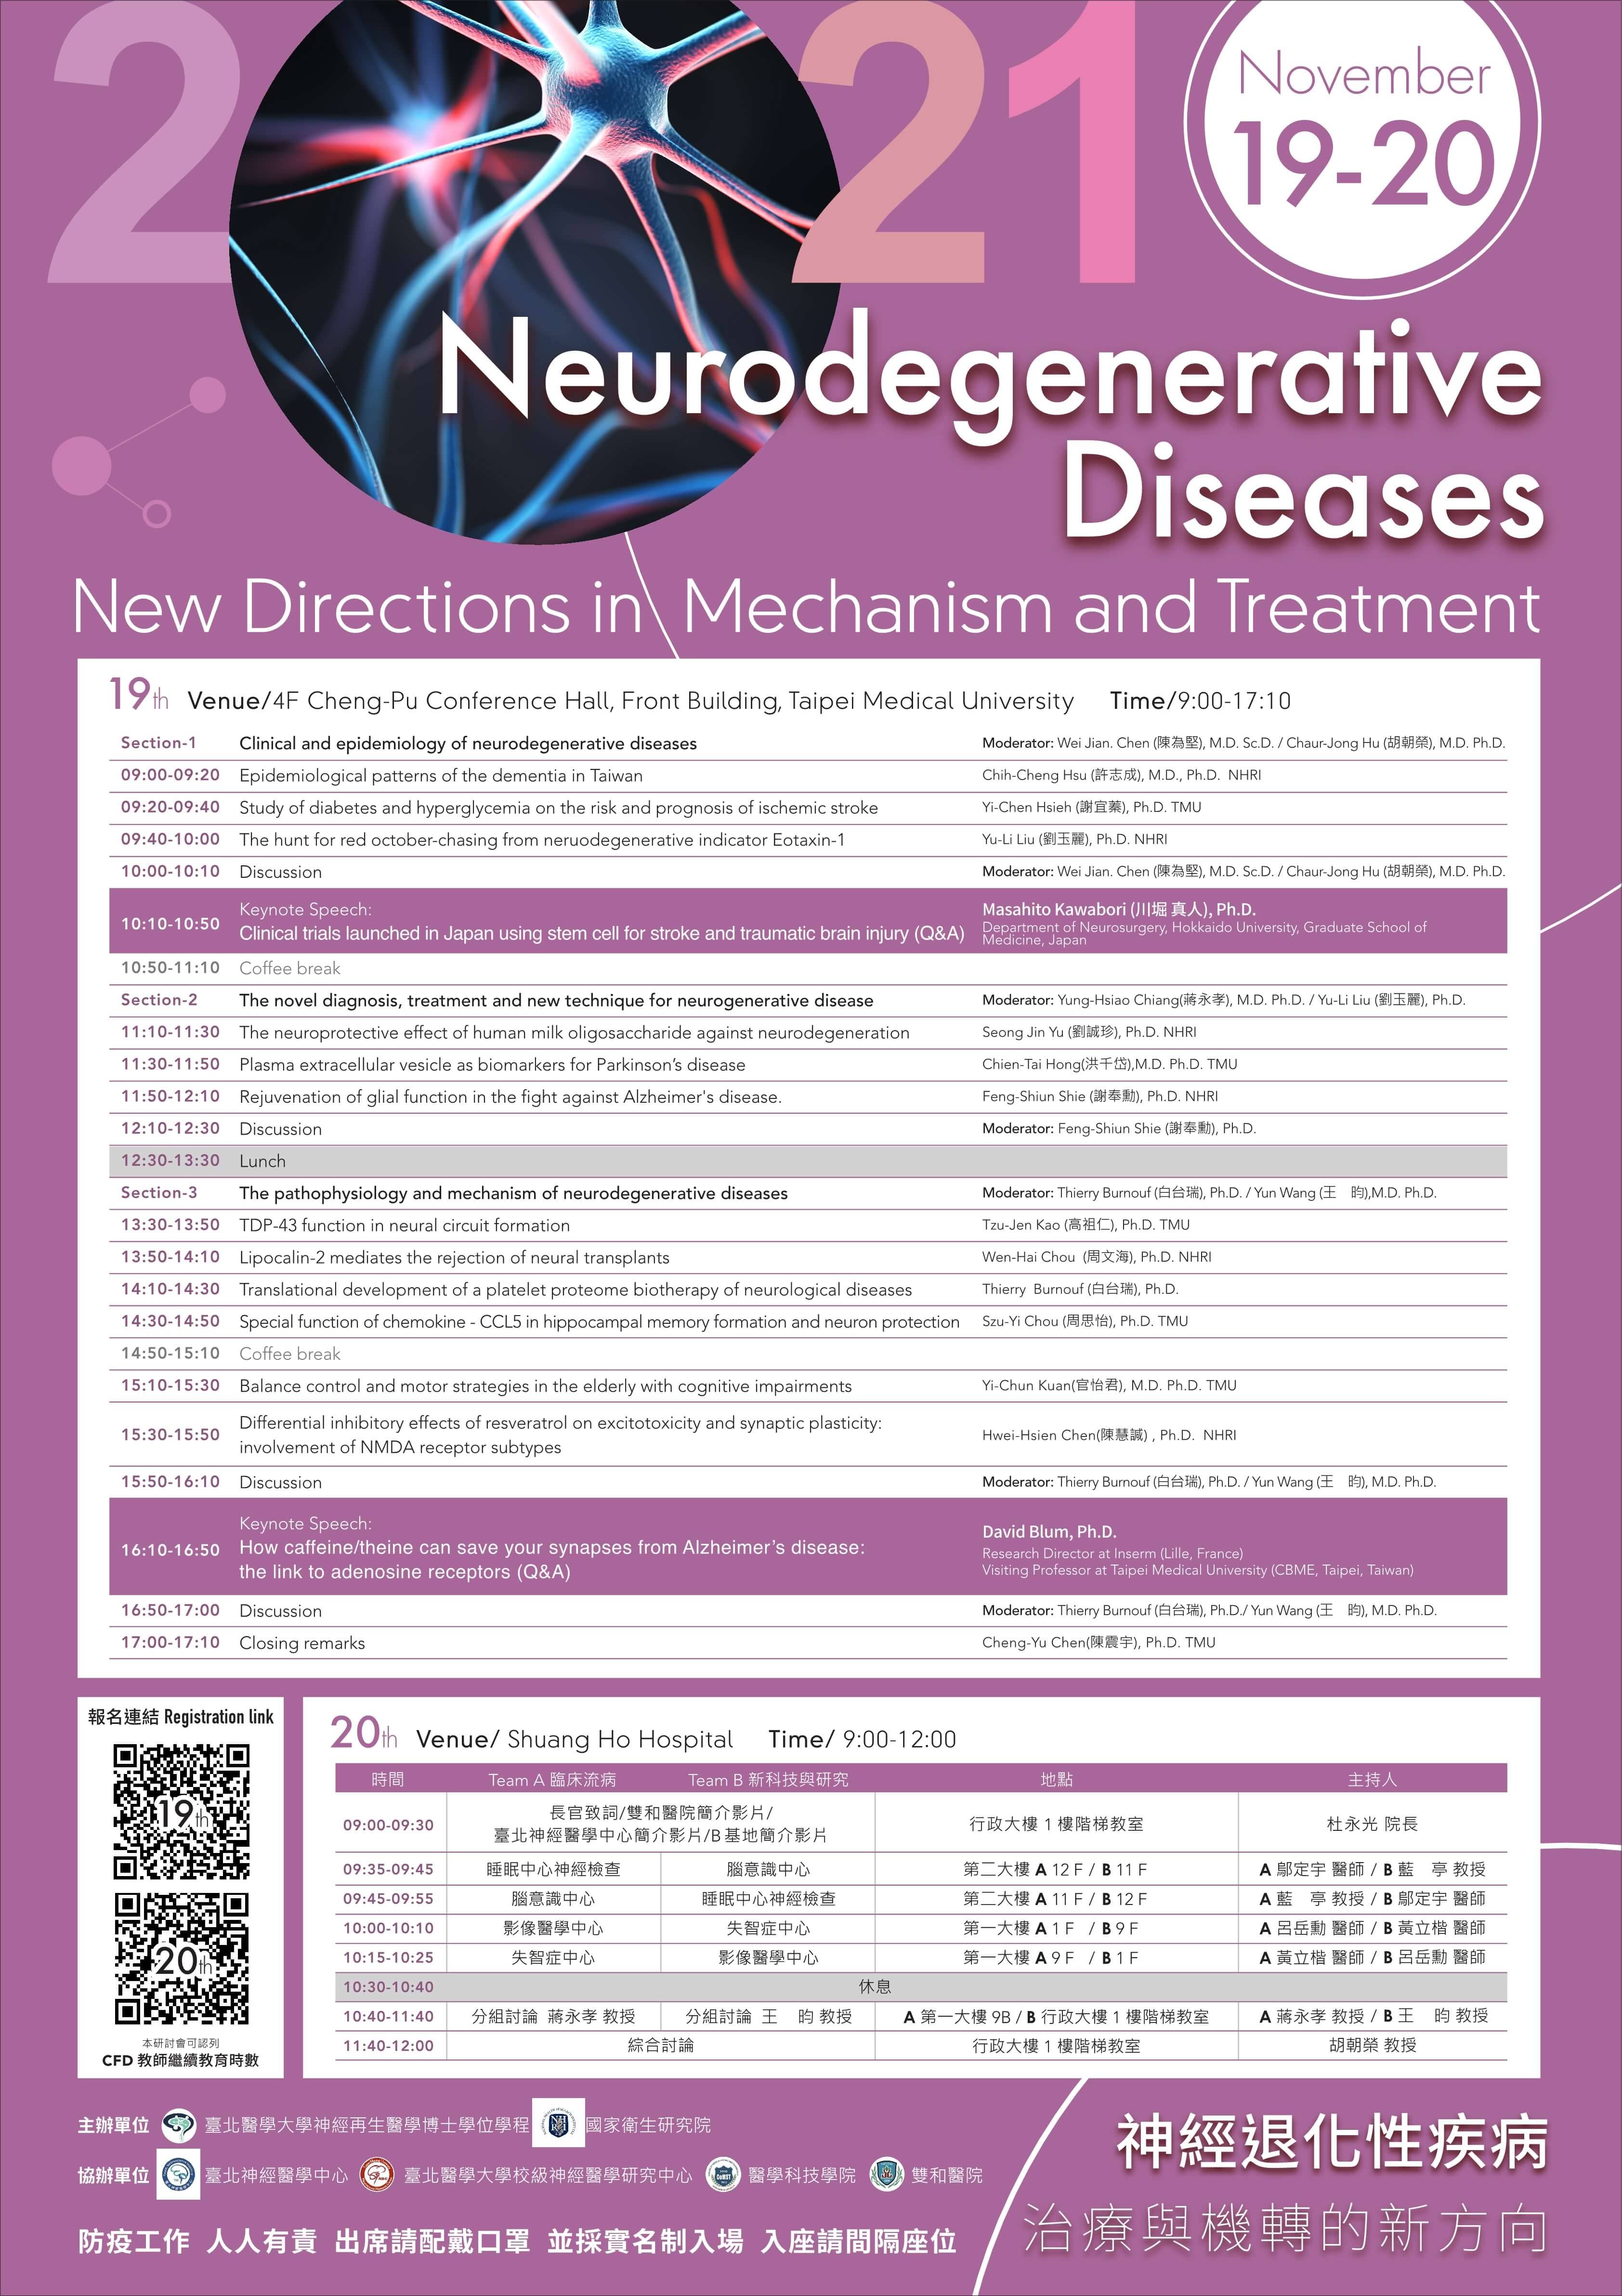 敬邀參與11/19(五).11/20(六) 國衛院與北醫大合辦 「2021神經退化性疾病-治療與機轉的新方向 2021 Neurodegenerative Diseases - New Directions in Mechanism and Treatment」國際研討會.